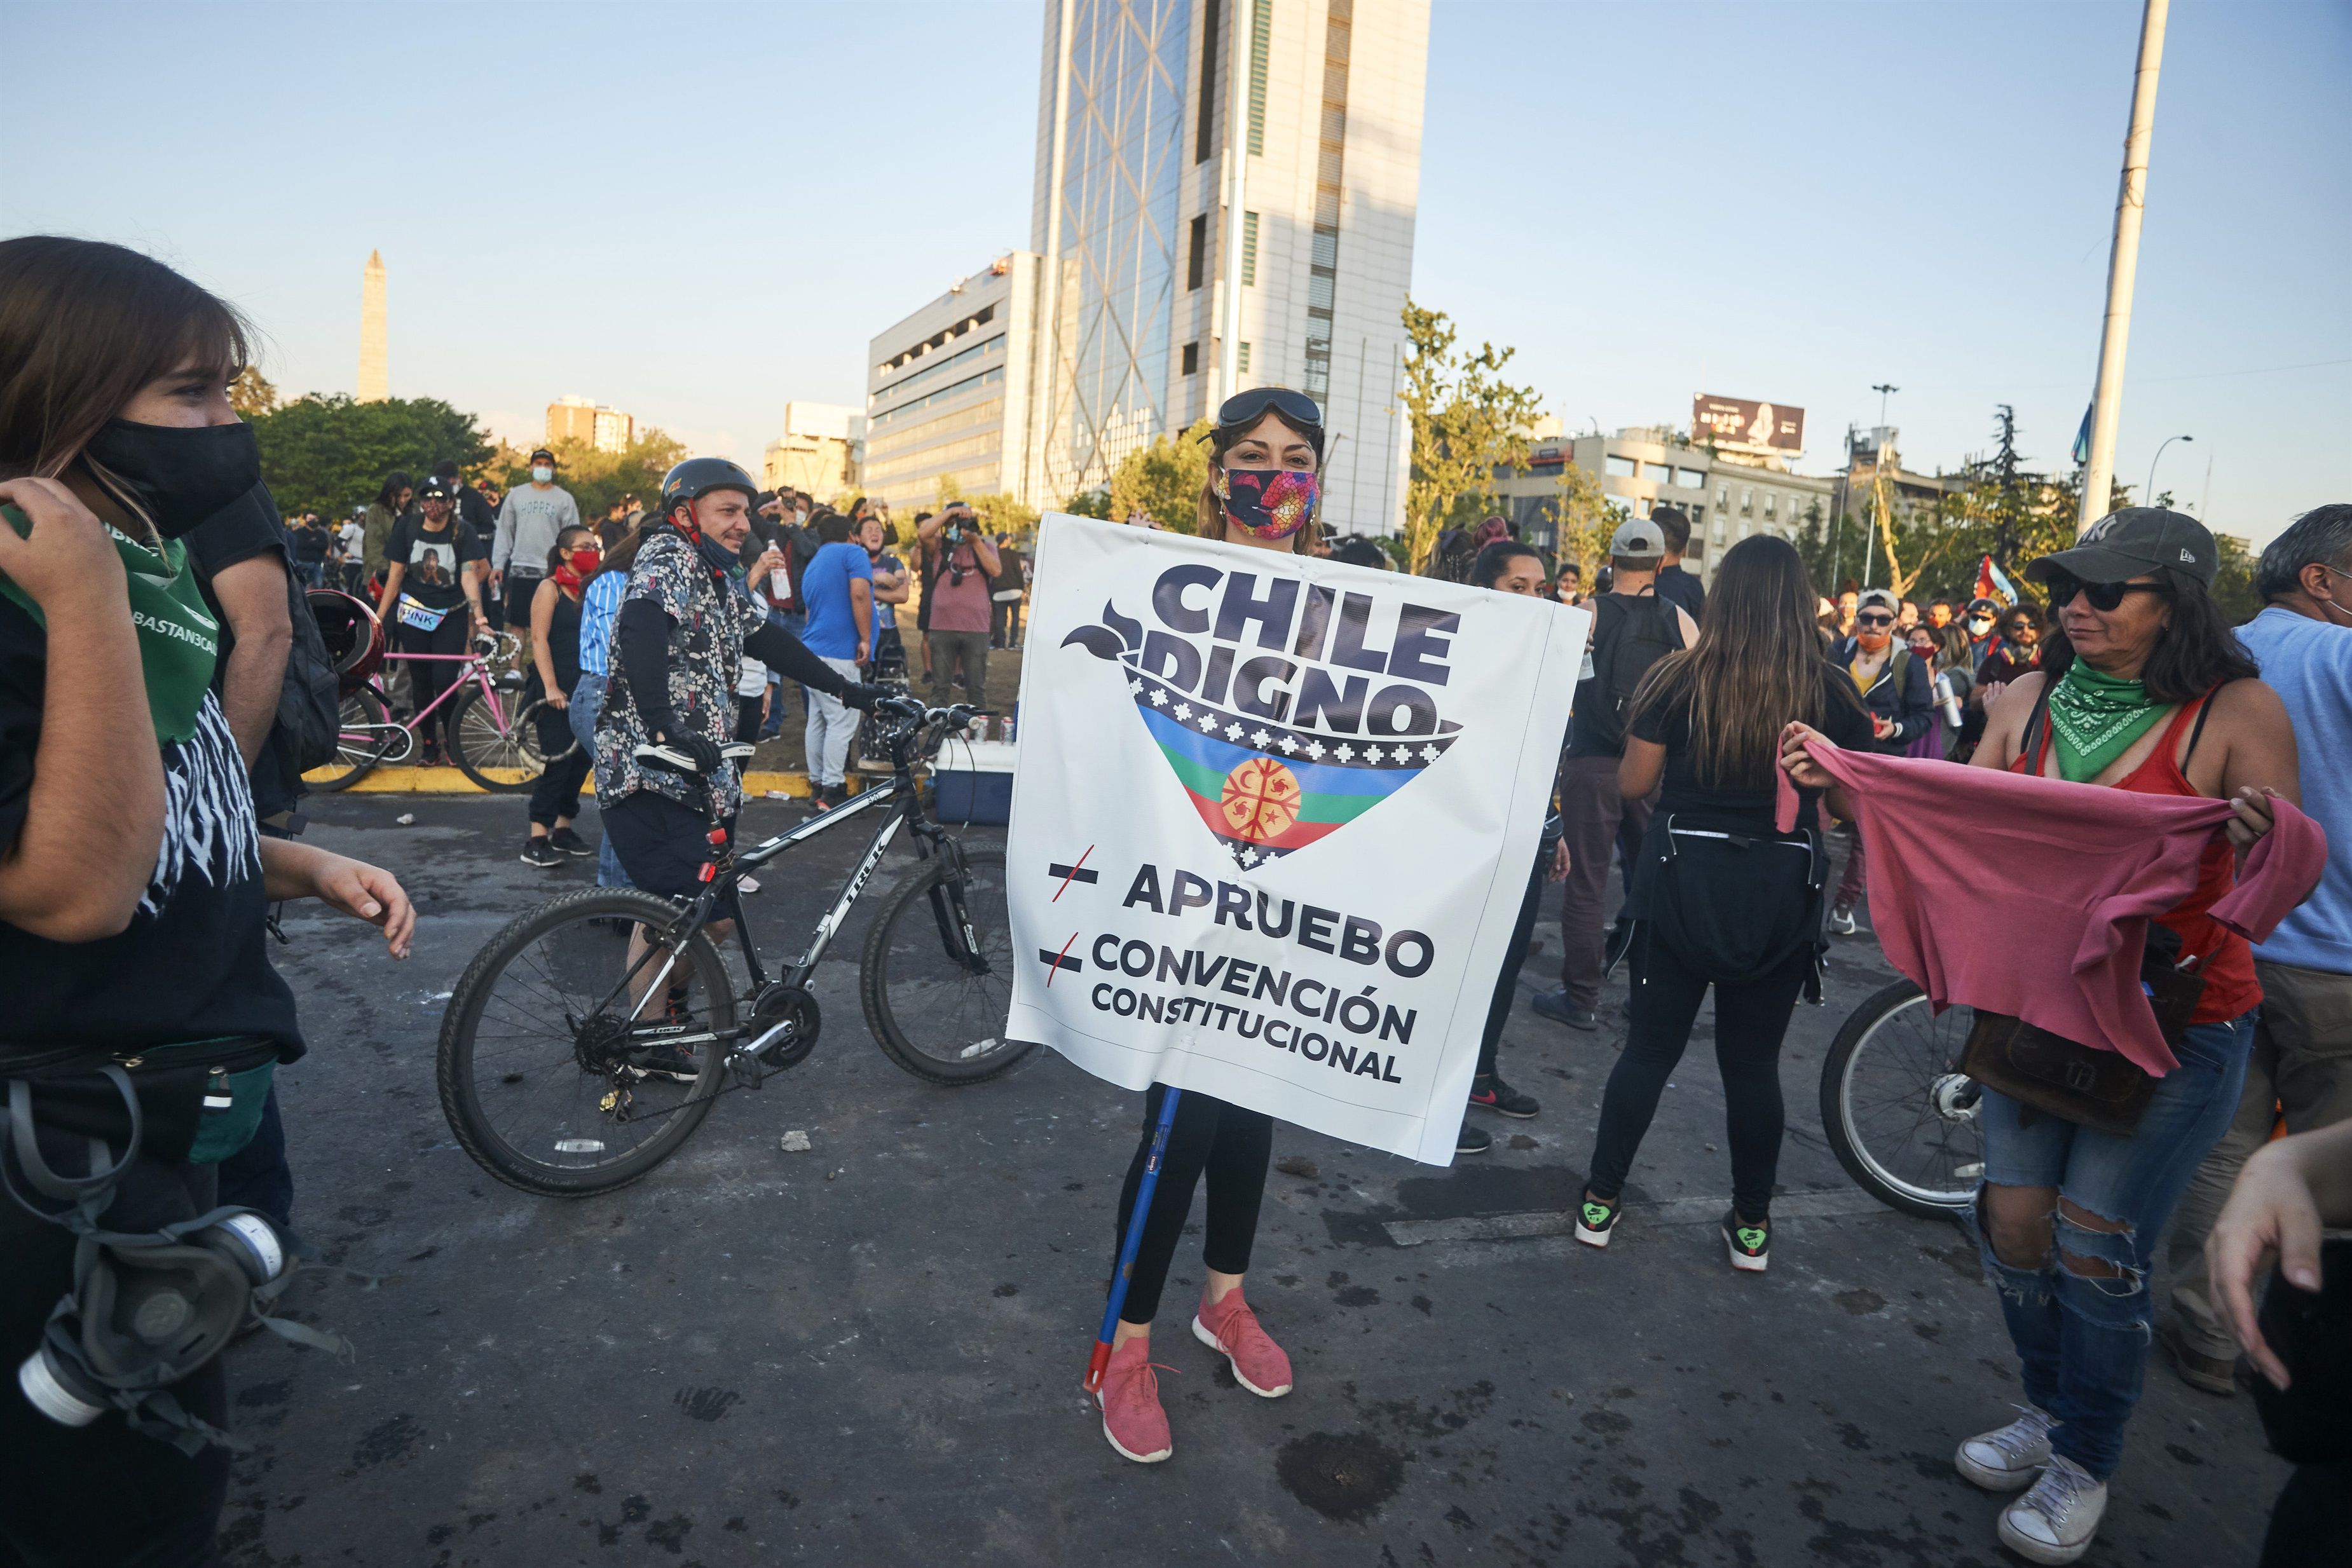 25/10/2020 Centenares de chilenos han salido a las calles a celebrar el histórico triunfo en el plebiscito que pone fin a la Constitución legada por el dictador Augusto Pinochet (!973-1990).
ECONOMIA SUDAMÉRICA CHILE INTERNACIONAL LATINOAMÉRICA
FRANCISCO ARIAS / ZUMA PRESS / CONTACTOPHOTO
